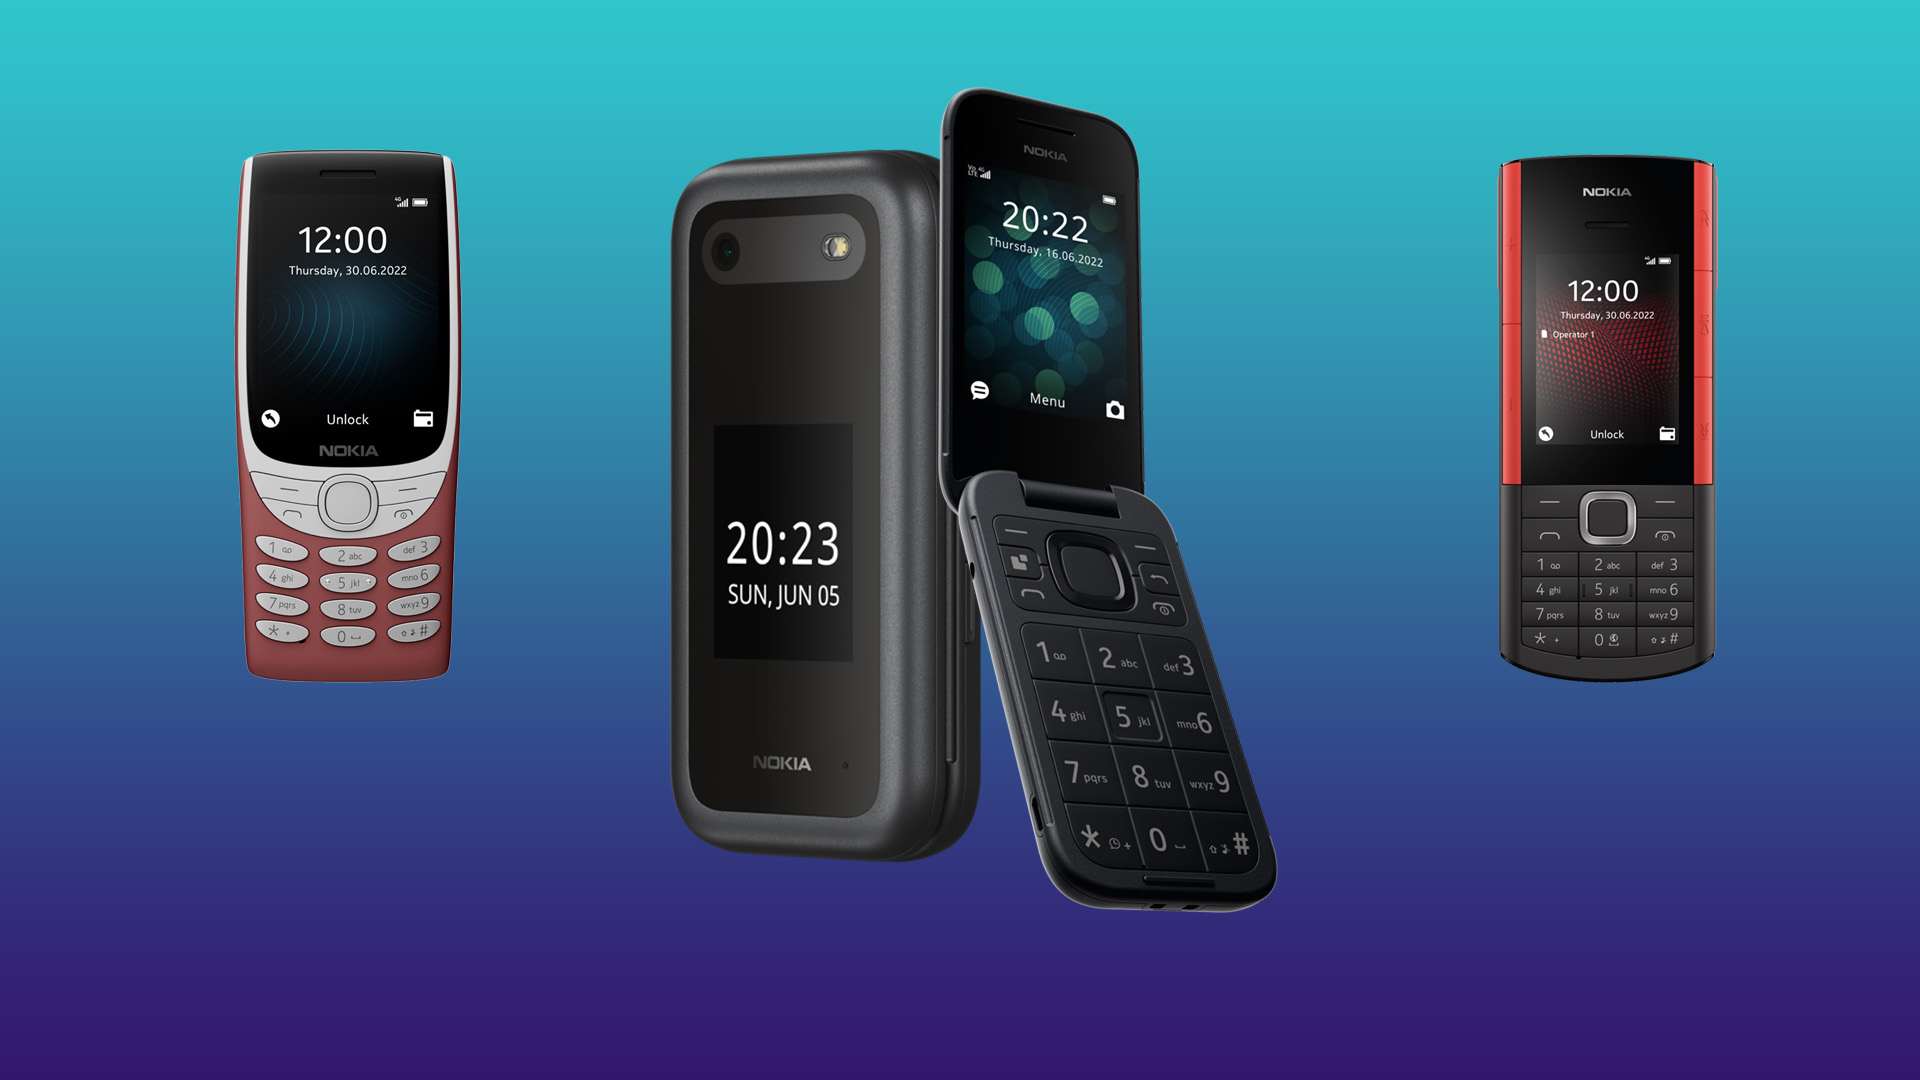 Nokia ออกมือถือพับได้ราคา 2,490 บาท, มือถือพร้อมหูฟัง TWS ราคาแค่ 2,690 บาท!